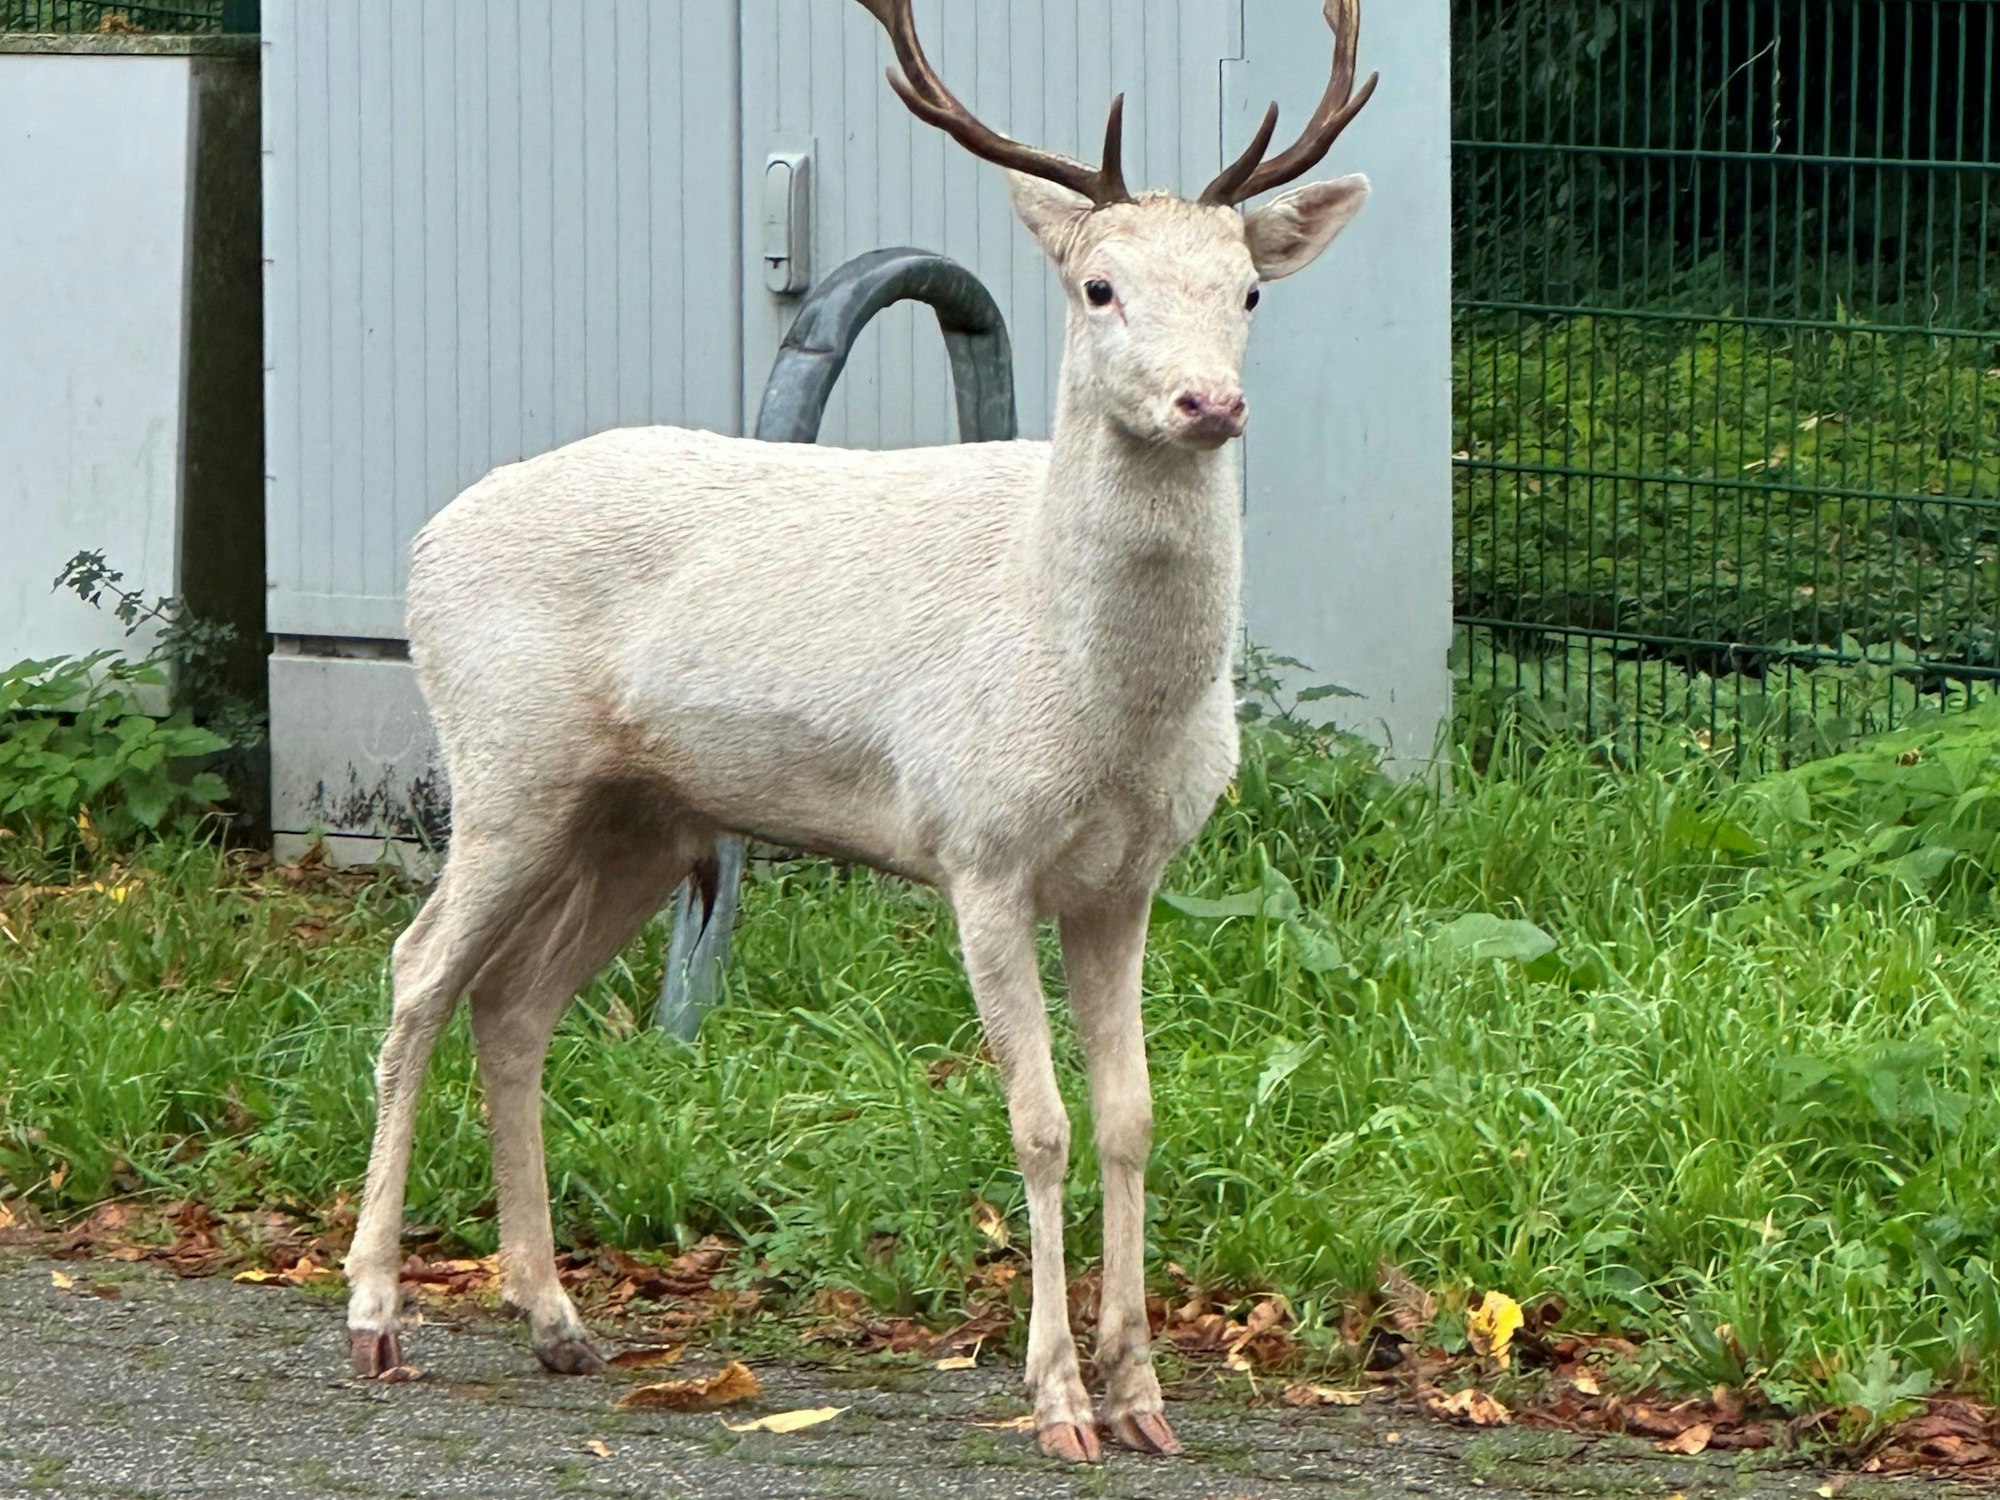 Dieser weiße Hirsch steht auf dem Parkplatz eines Baumarkts. Zeugen hatten das außergewöhnliche Tier entdeckt und die Polizei alarmiert.